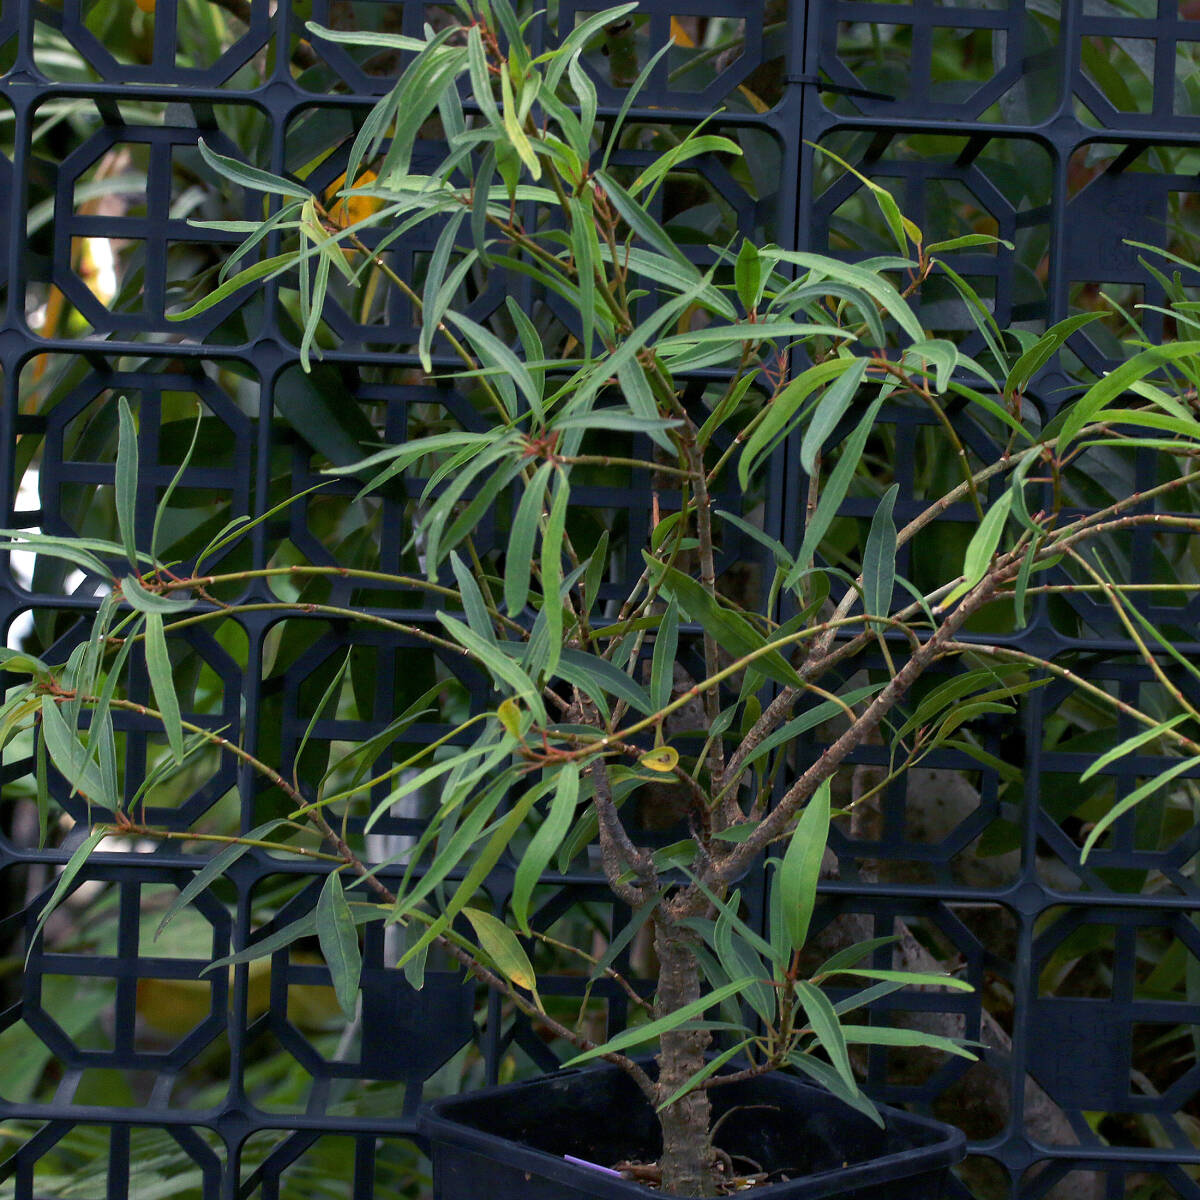 フィカスsp 参考画像あり 東南アジア産不明種 Ficus sp.neriifolia salicaria ∂∂∂の画像4